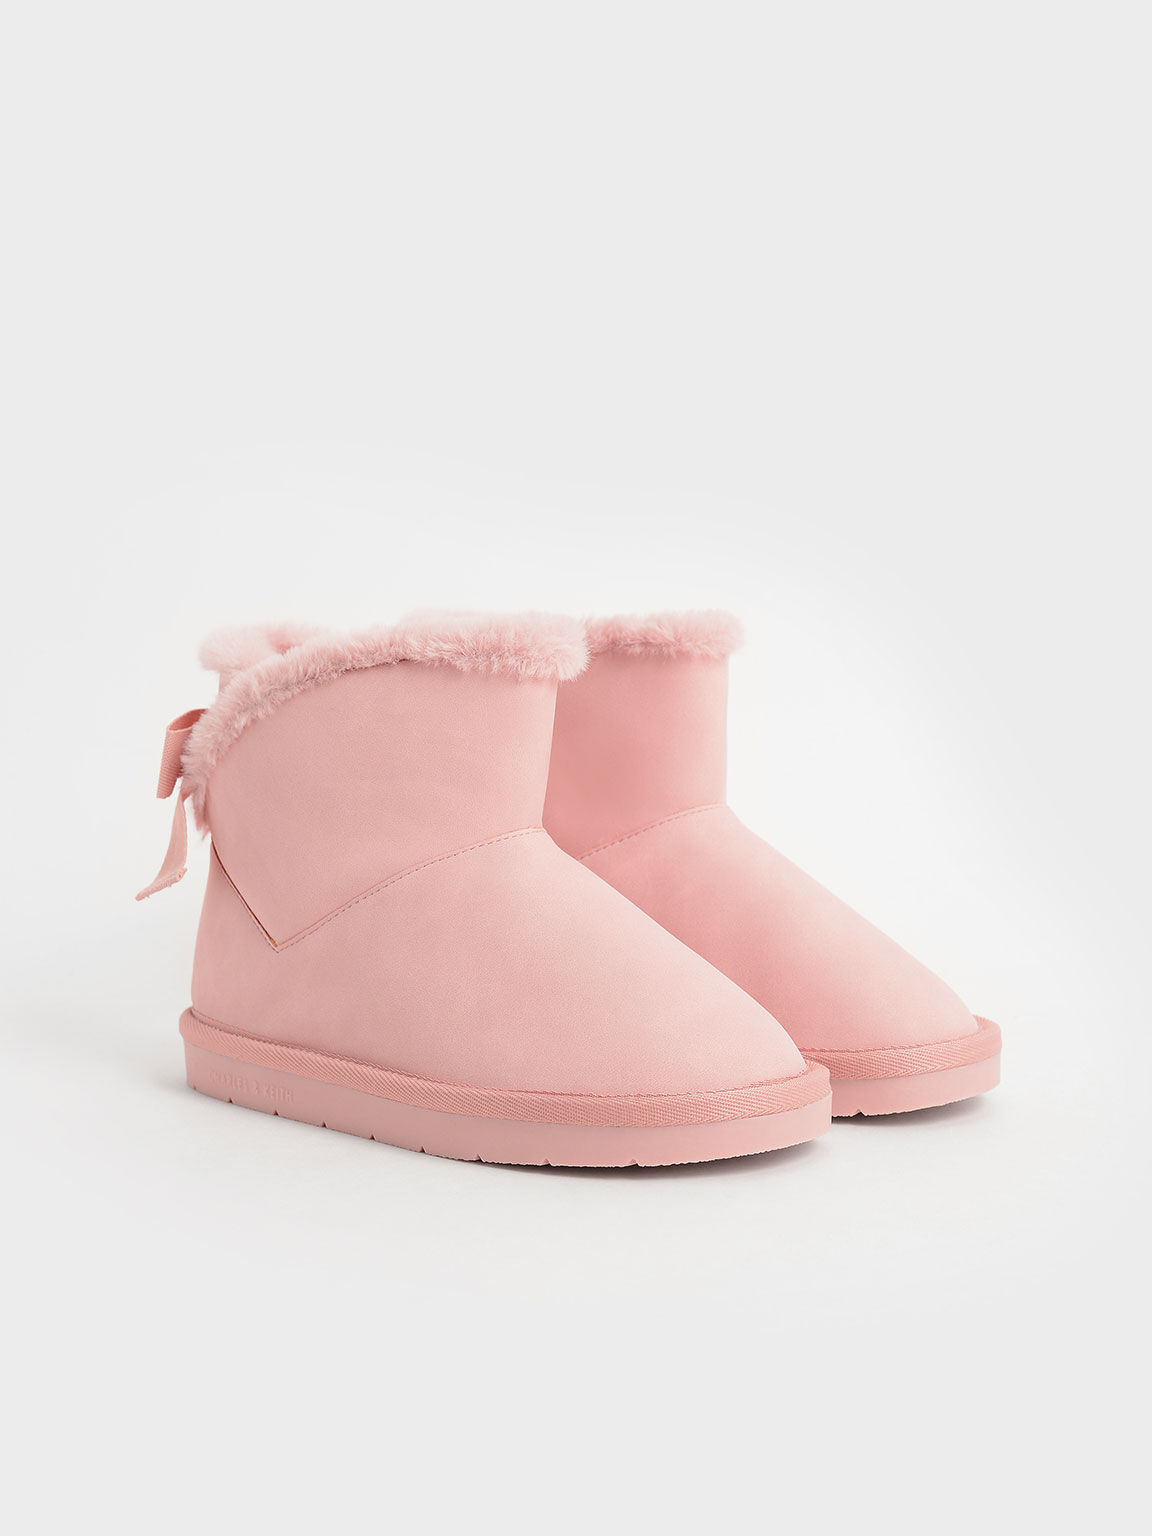 Girls' Fur-Trimmed Slip-On Ankle Boots, Blush, hi-res